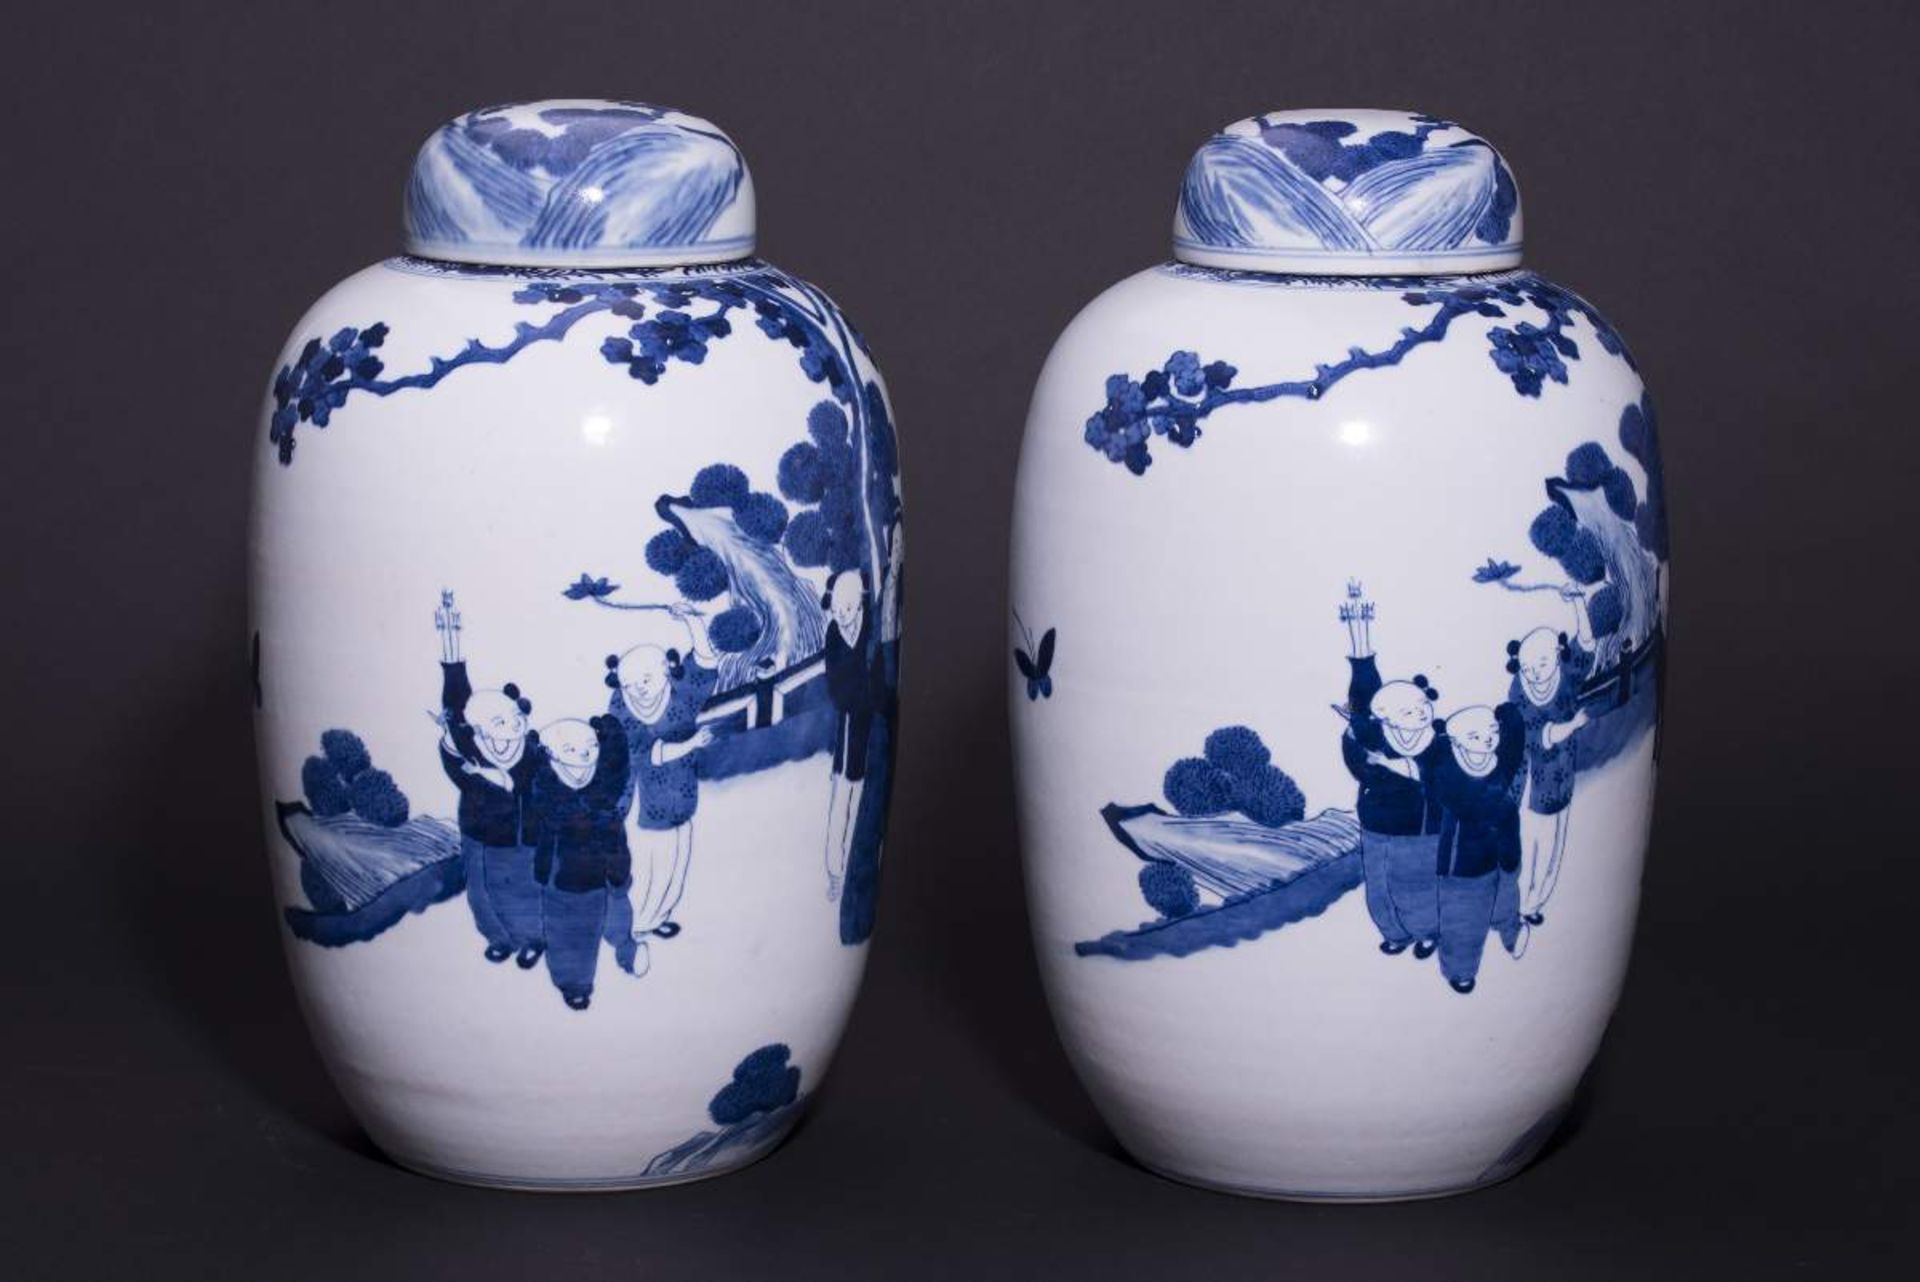 PAAR DECKELVASEN MIT GARTENSZENENBlauweißes Porzellan. China, Qing-Dynastie, 19. Jh.Mit Bodenmarke - Image 6 of 6